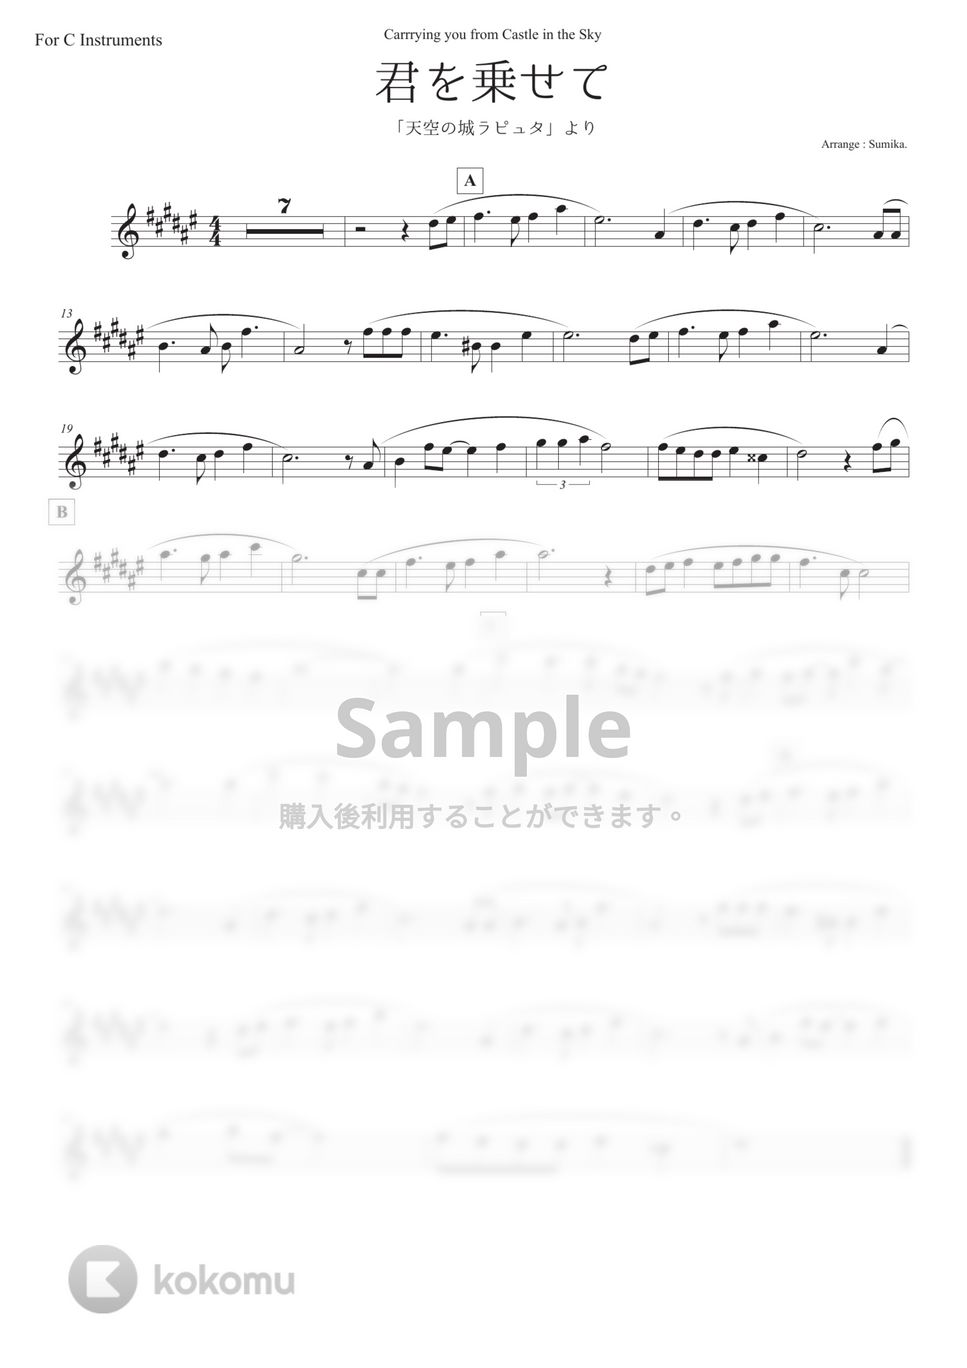 天空の城ラピュタ - 君をのせて (in C 上級 - Original Key) by Sumika